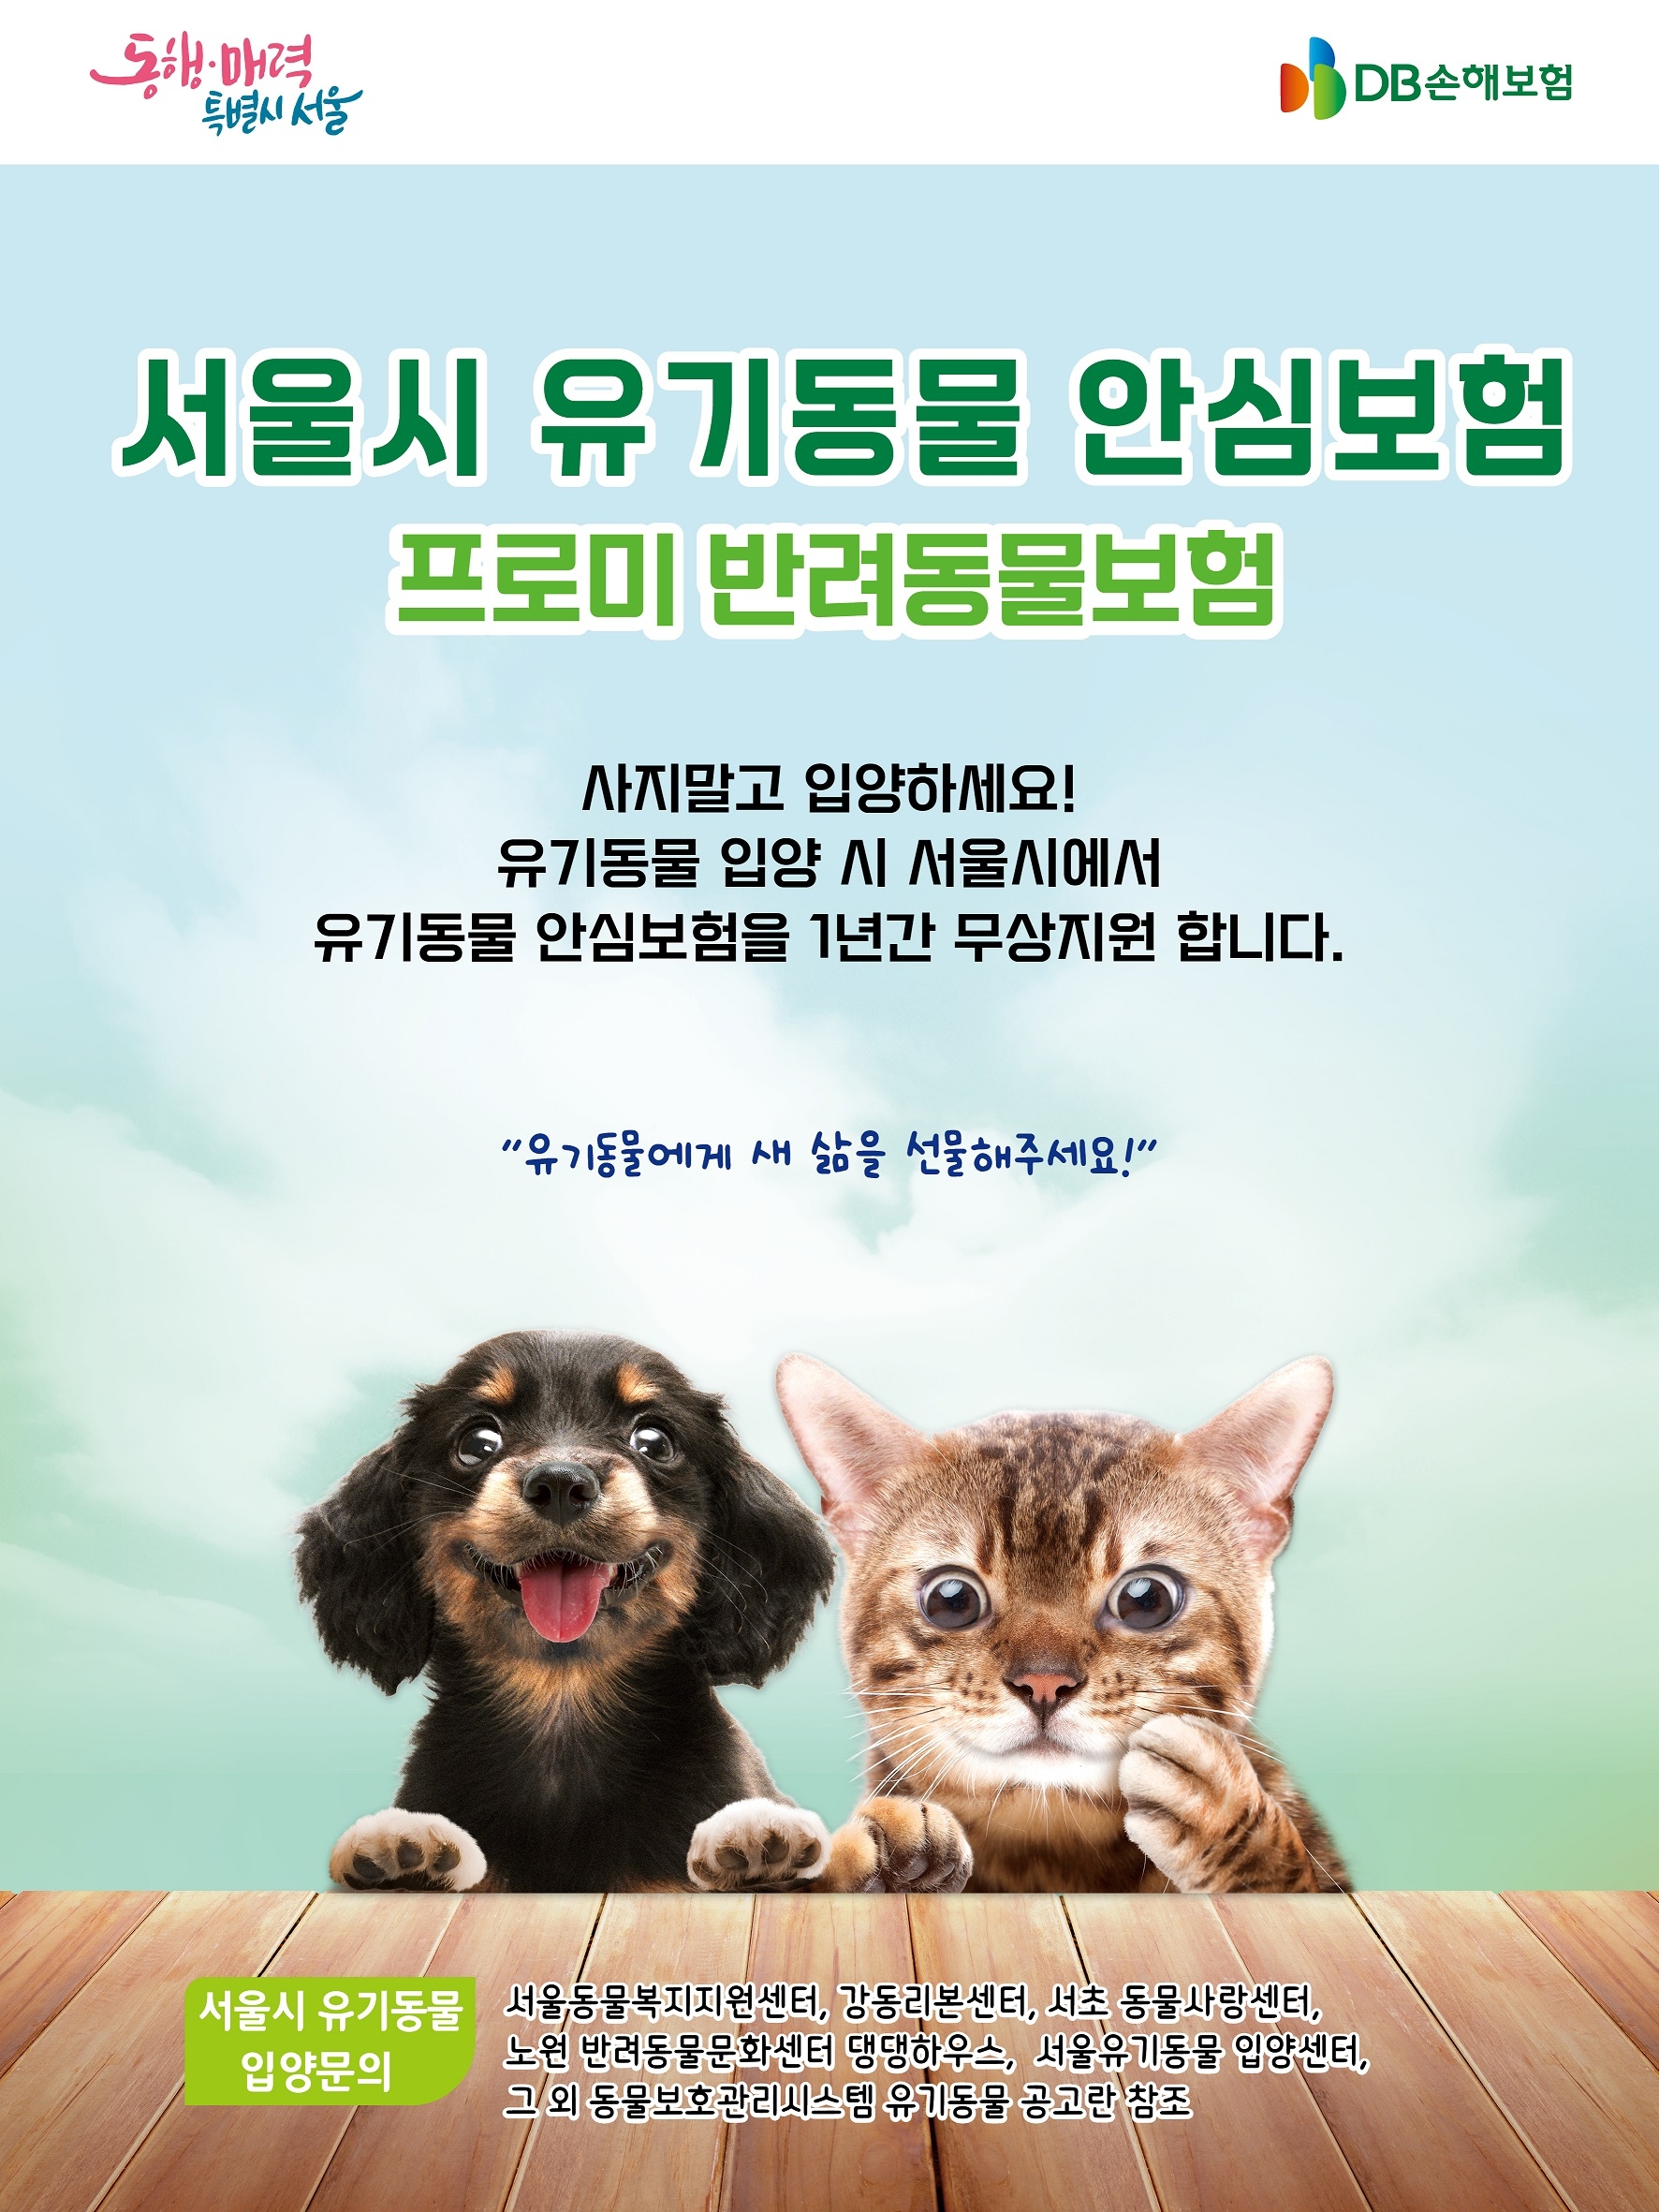 DB손해보험이 3년 연속으로 '서울시 유기동물 안심보험 지원사업'에 참여하게 됐다./사진제공=DB손해보험